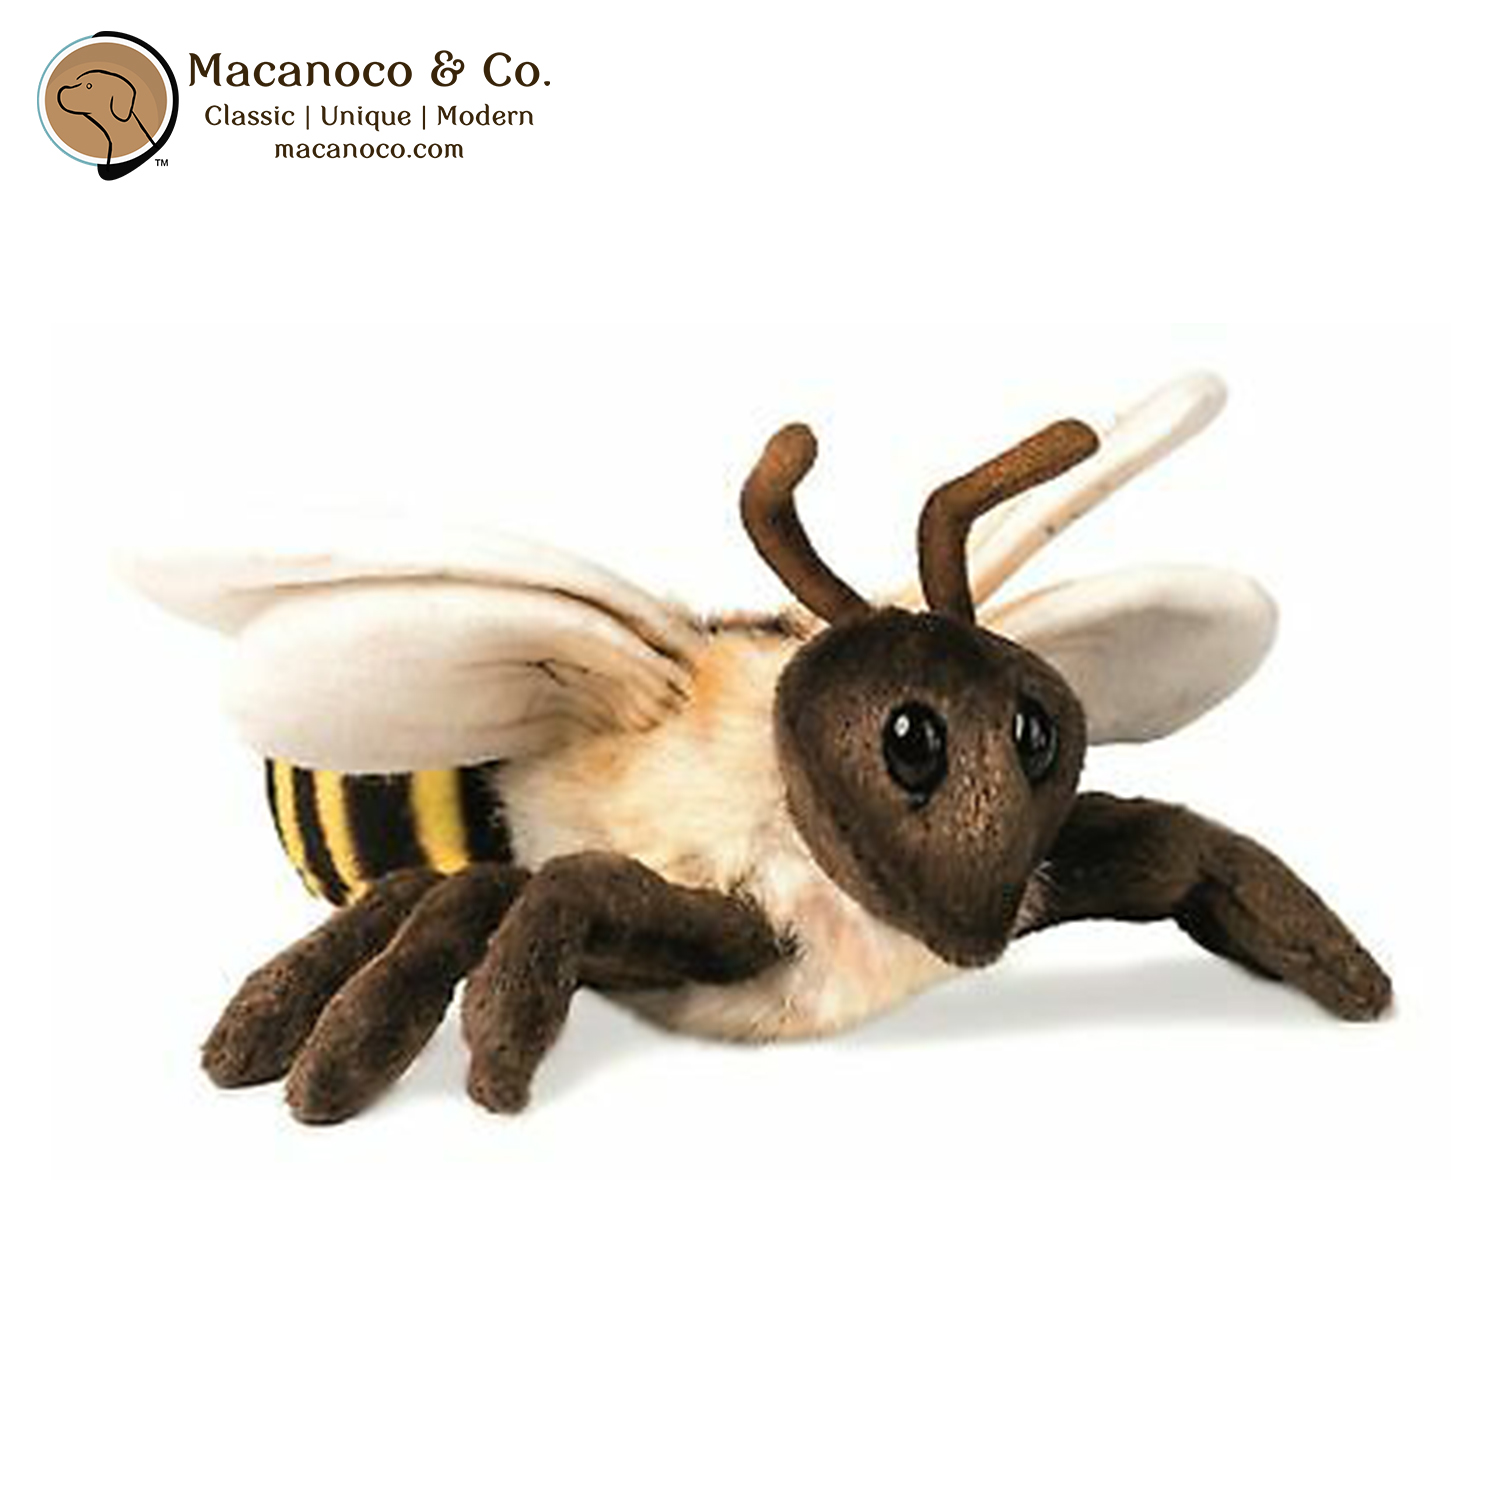 Realistic Bee Stuffed Animal Plush Toy, Lifelike Insect Animal